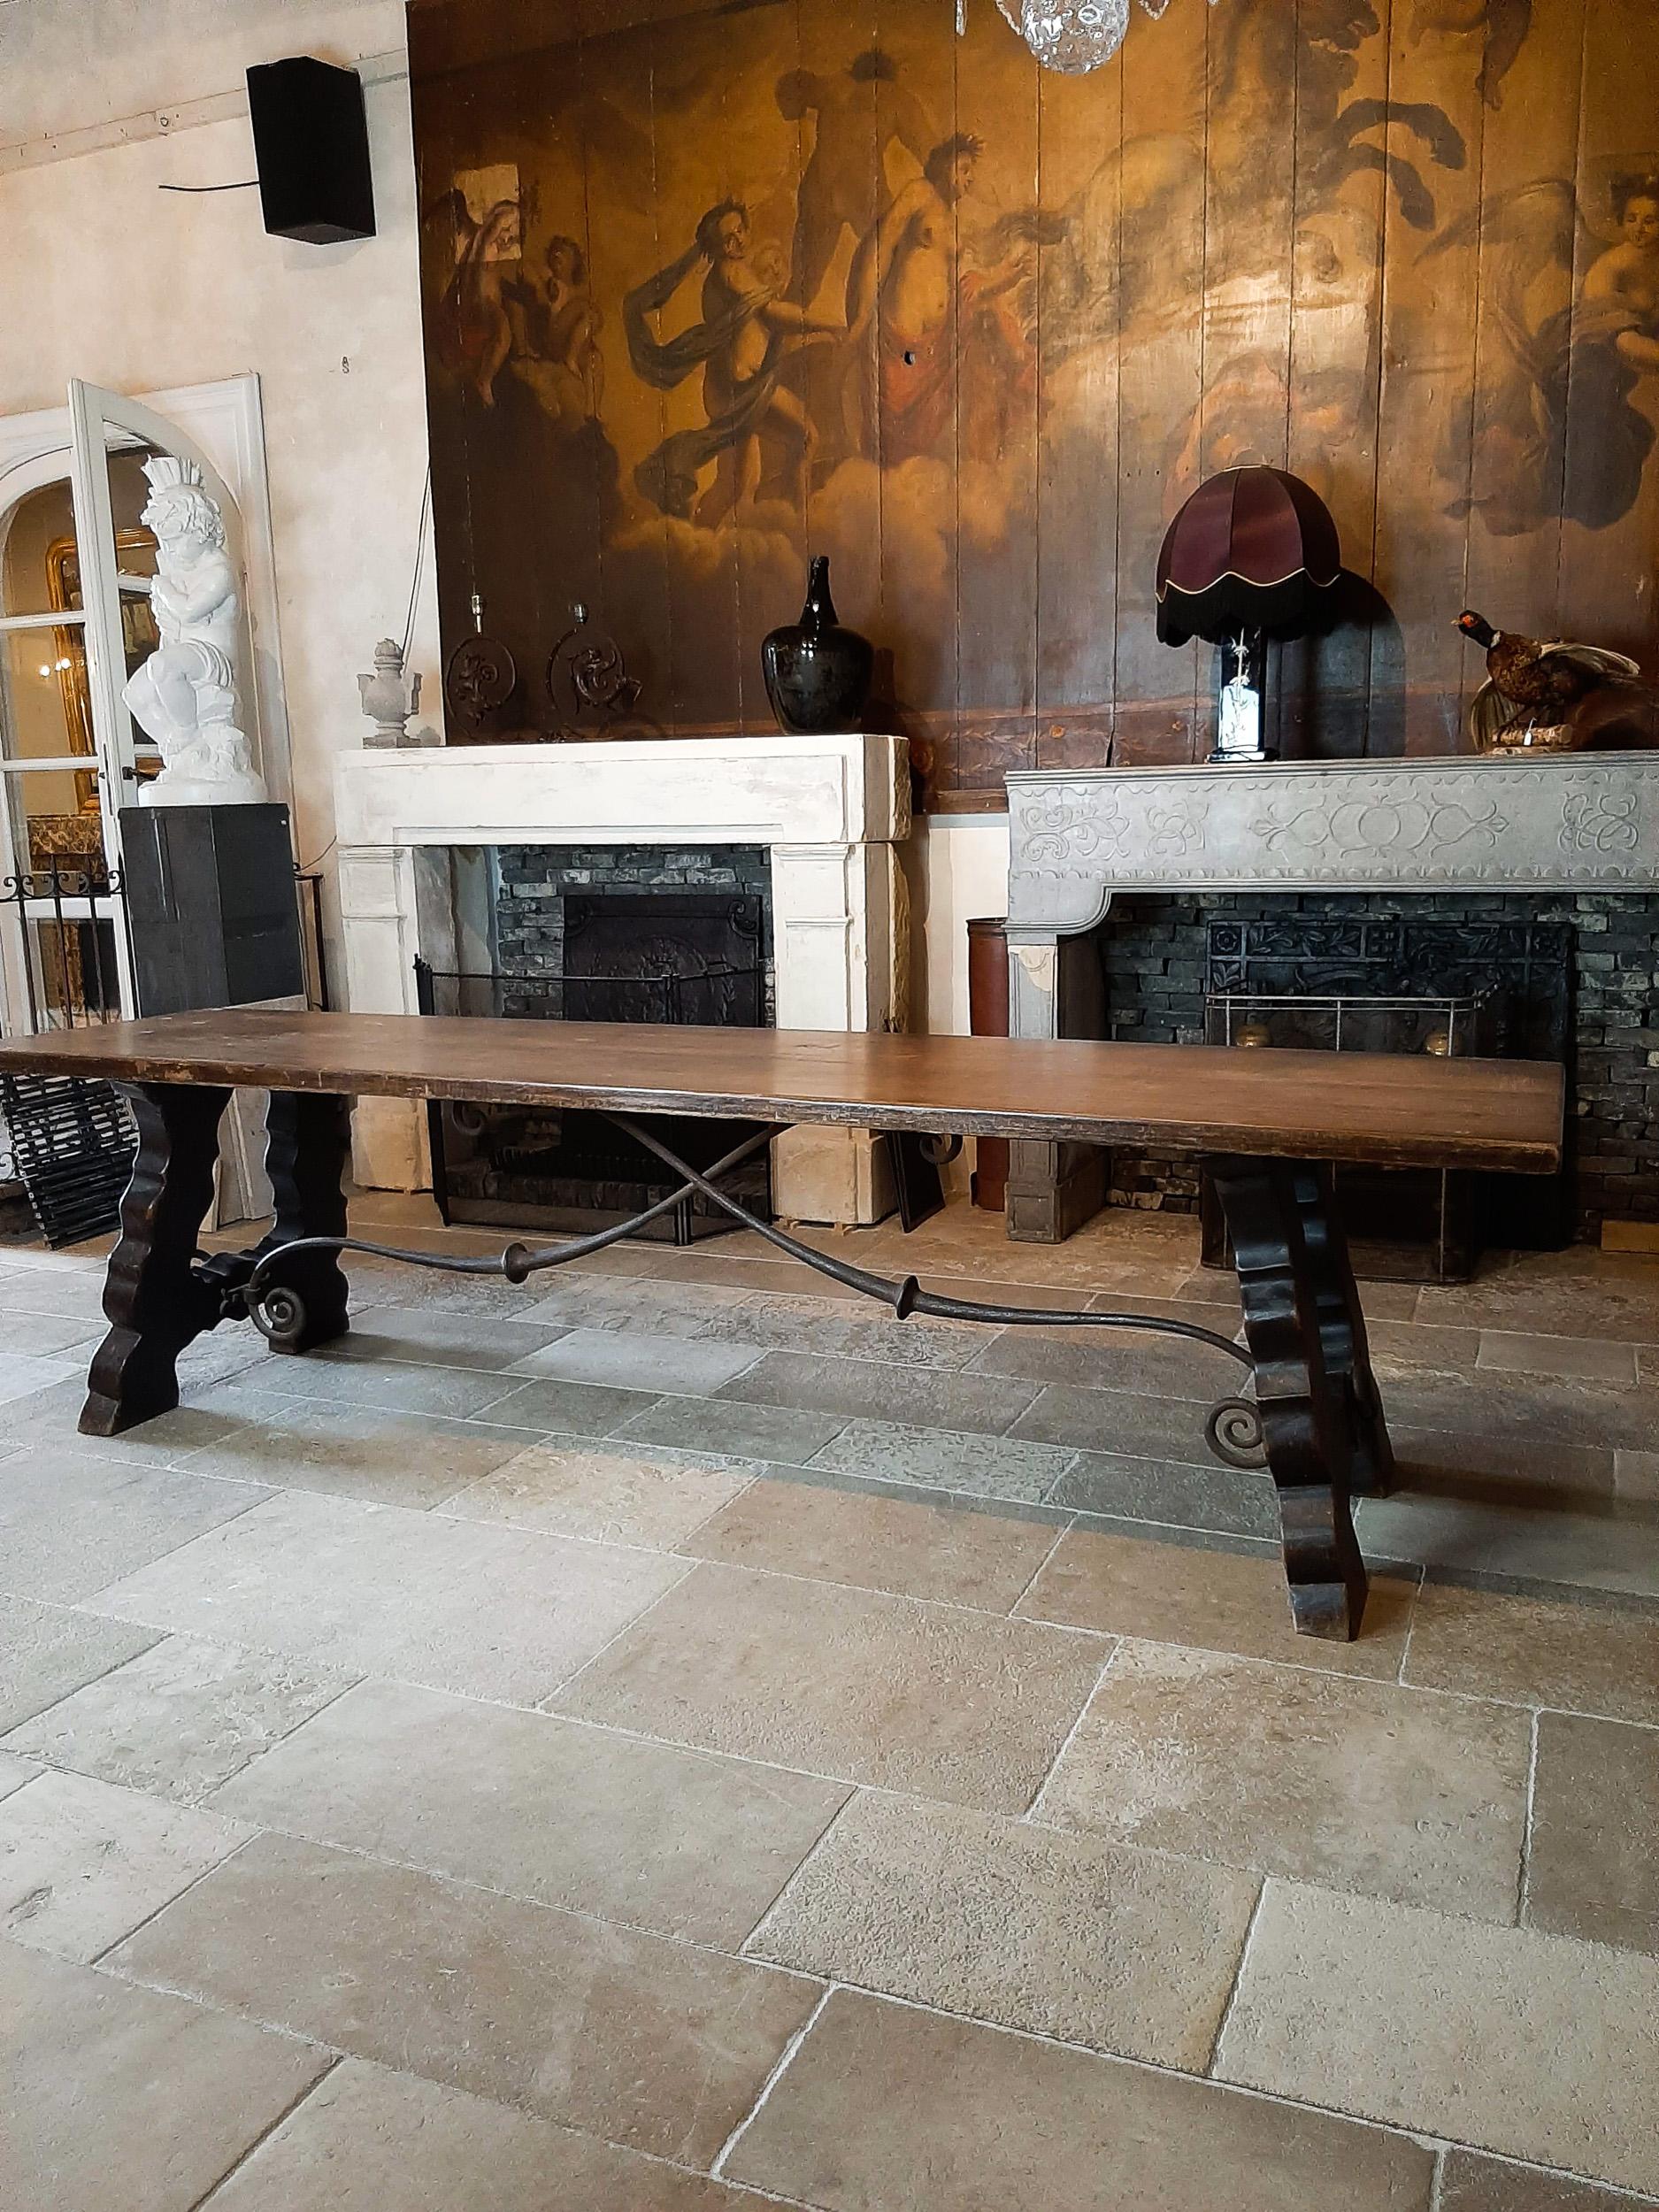 Robuste et élégante table de salle à manger espagnole en bois du XIXe siècle, à la patine usée, avec de magnifiques supports en fer forgé à la main dans la base.

Espagnol, mexicain, style Cortijo Ibiza.

Cette table espagnole du XIXe siècle est